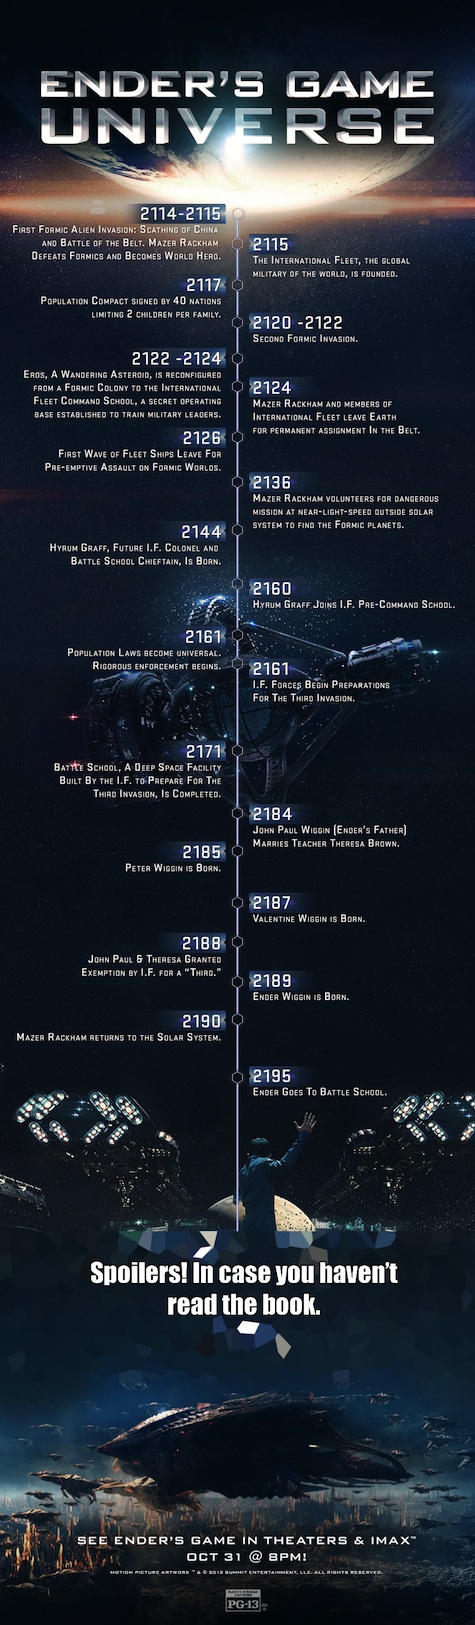 Ender's Game Universe Timeline